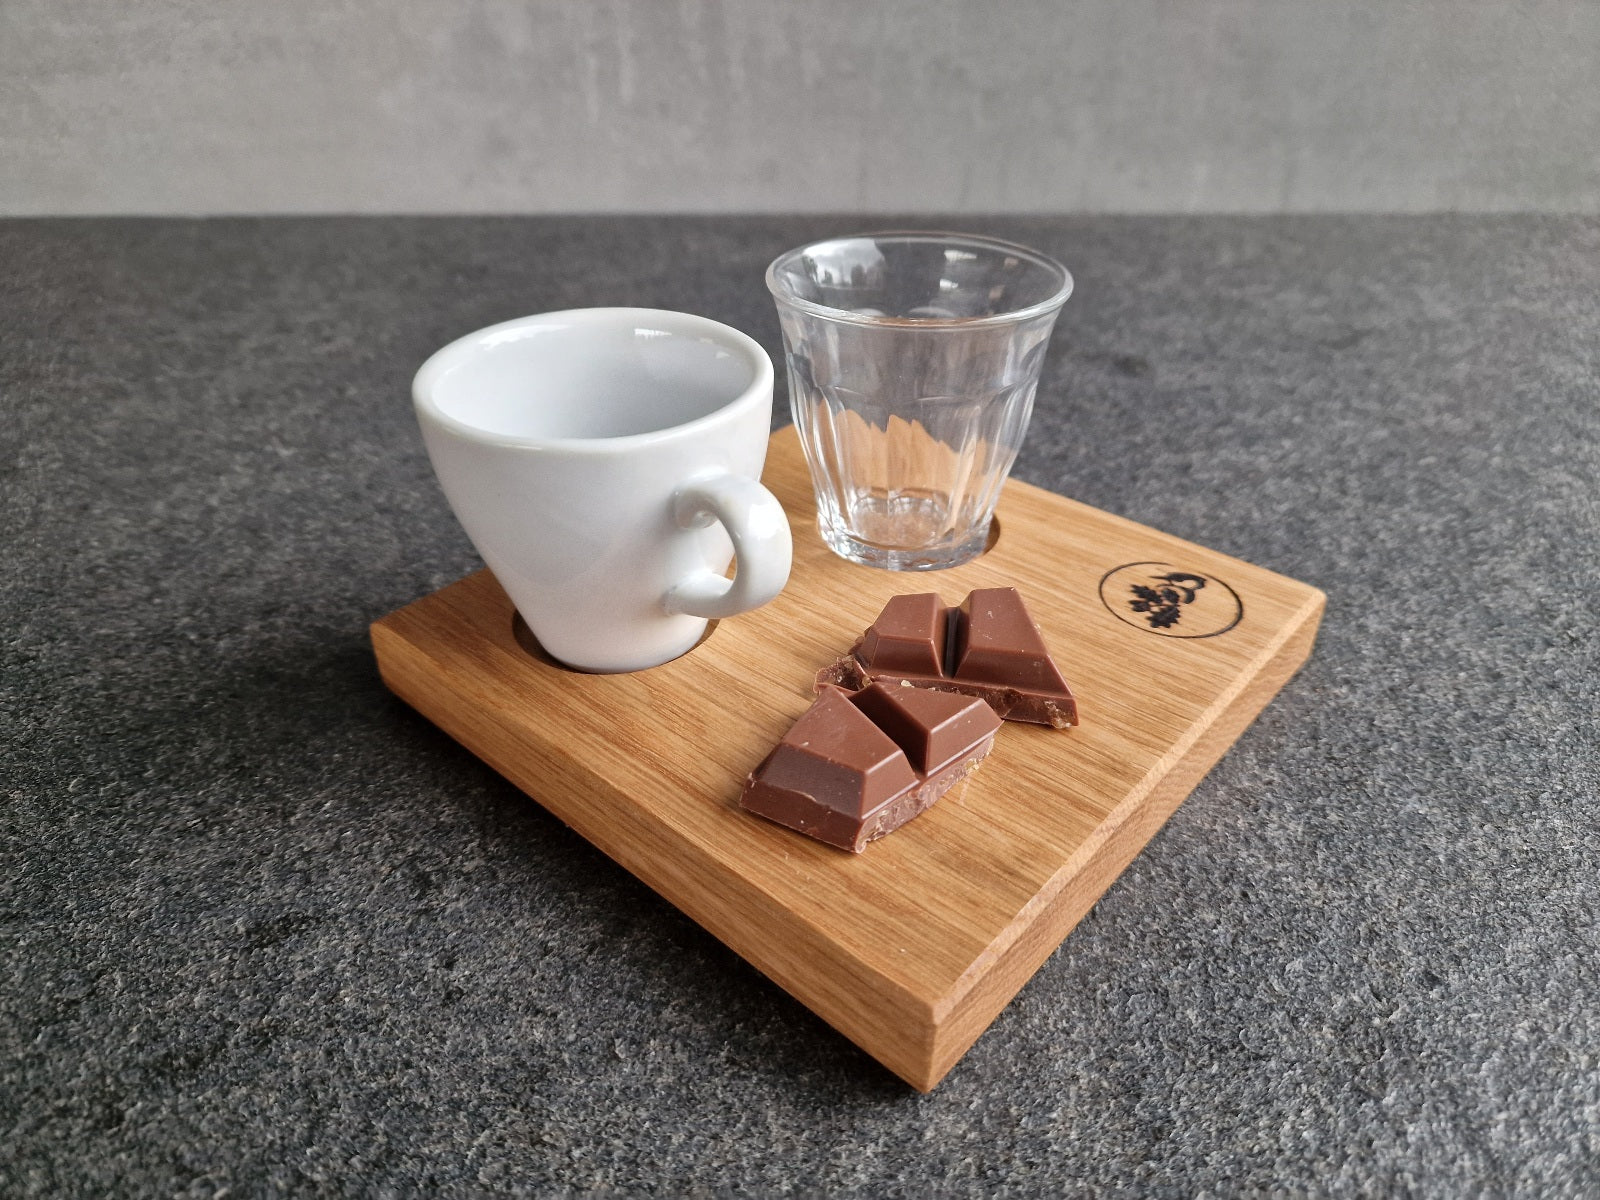 Holz-Tablett aus Eiche mit einer Espressotasse und einem Duralex Wasserglas. Dekoriert mit Schokolade.